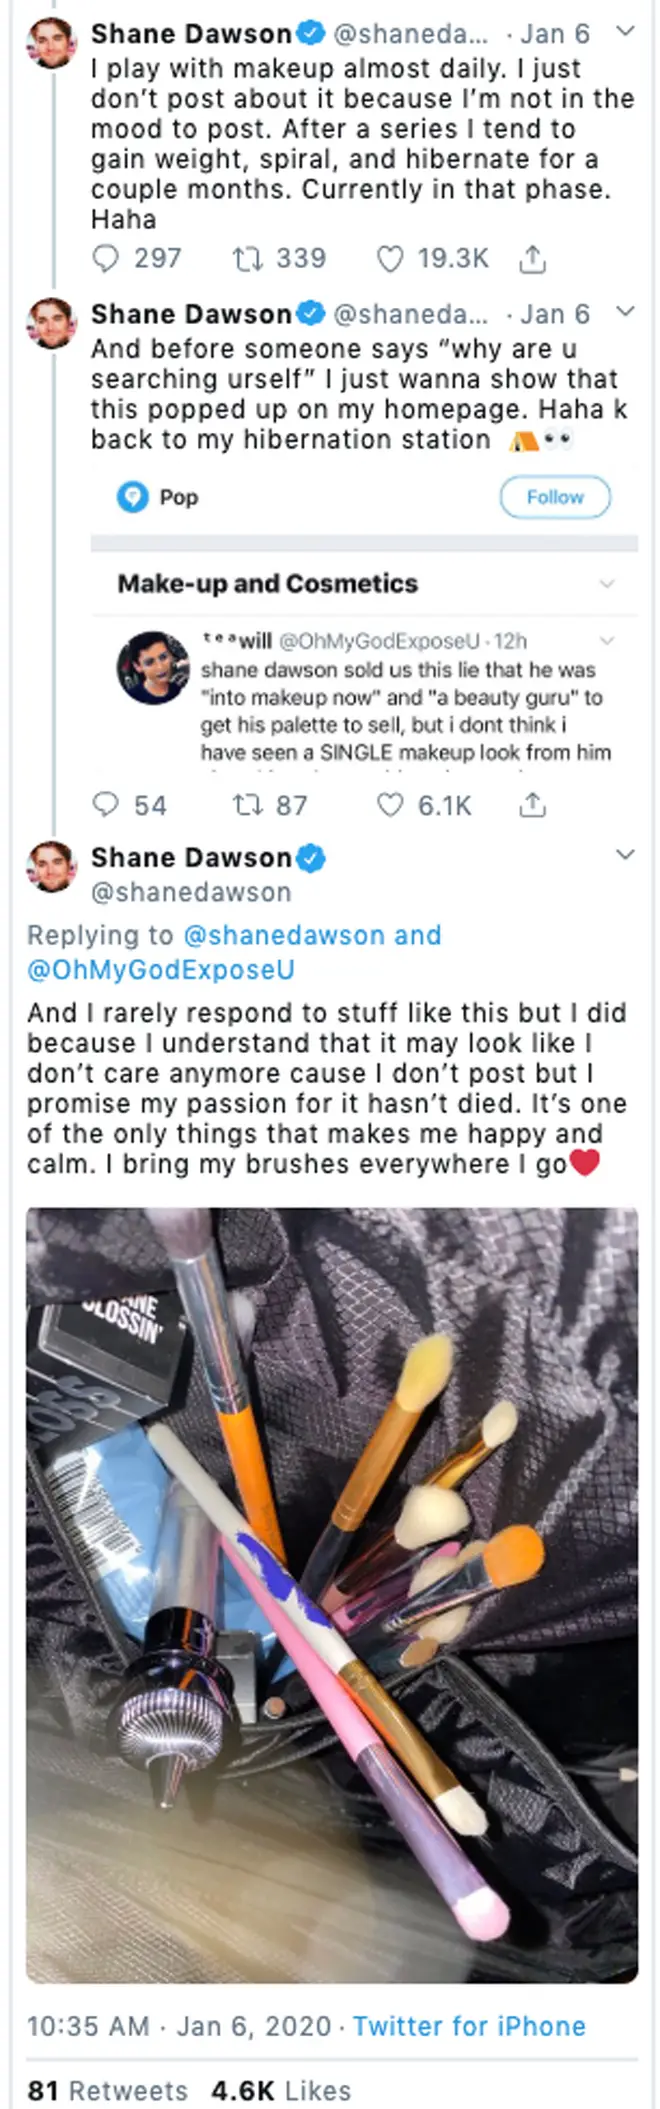 Shane Dawson Tweets